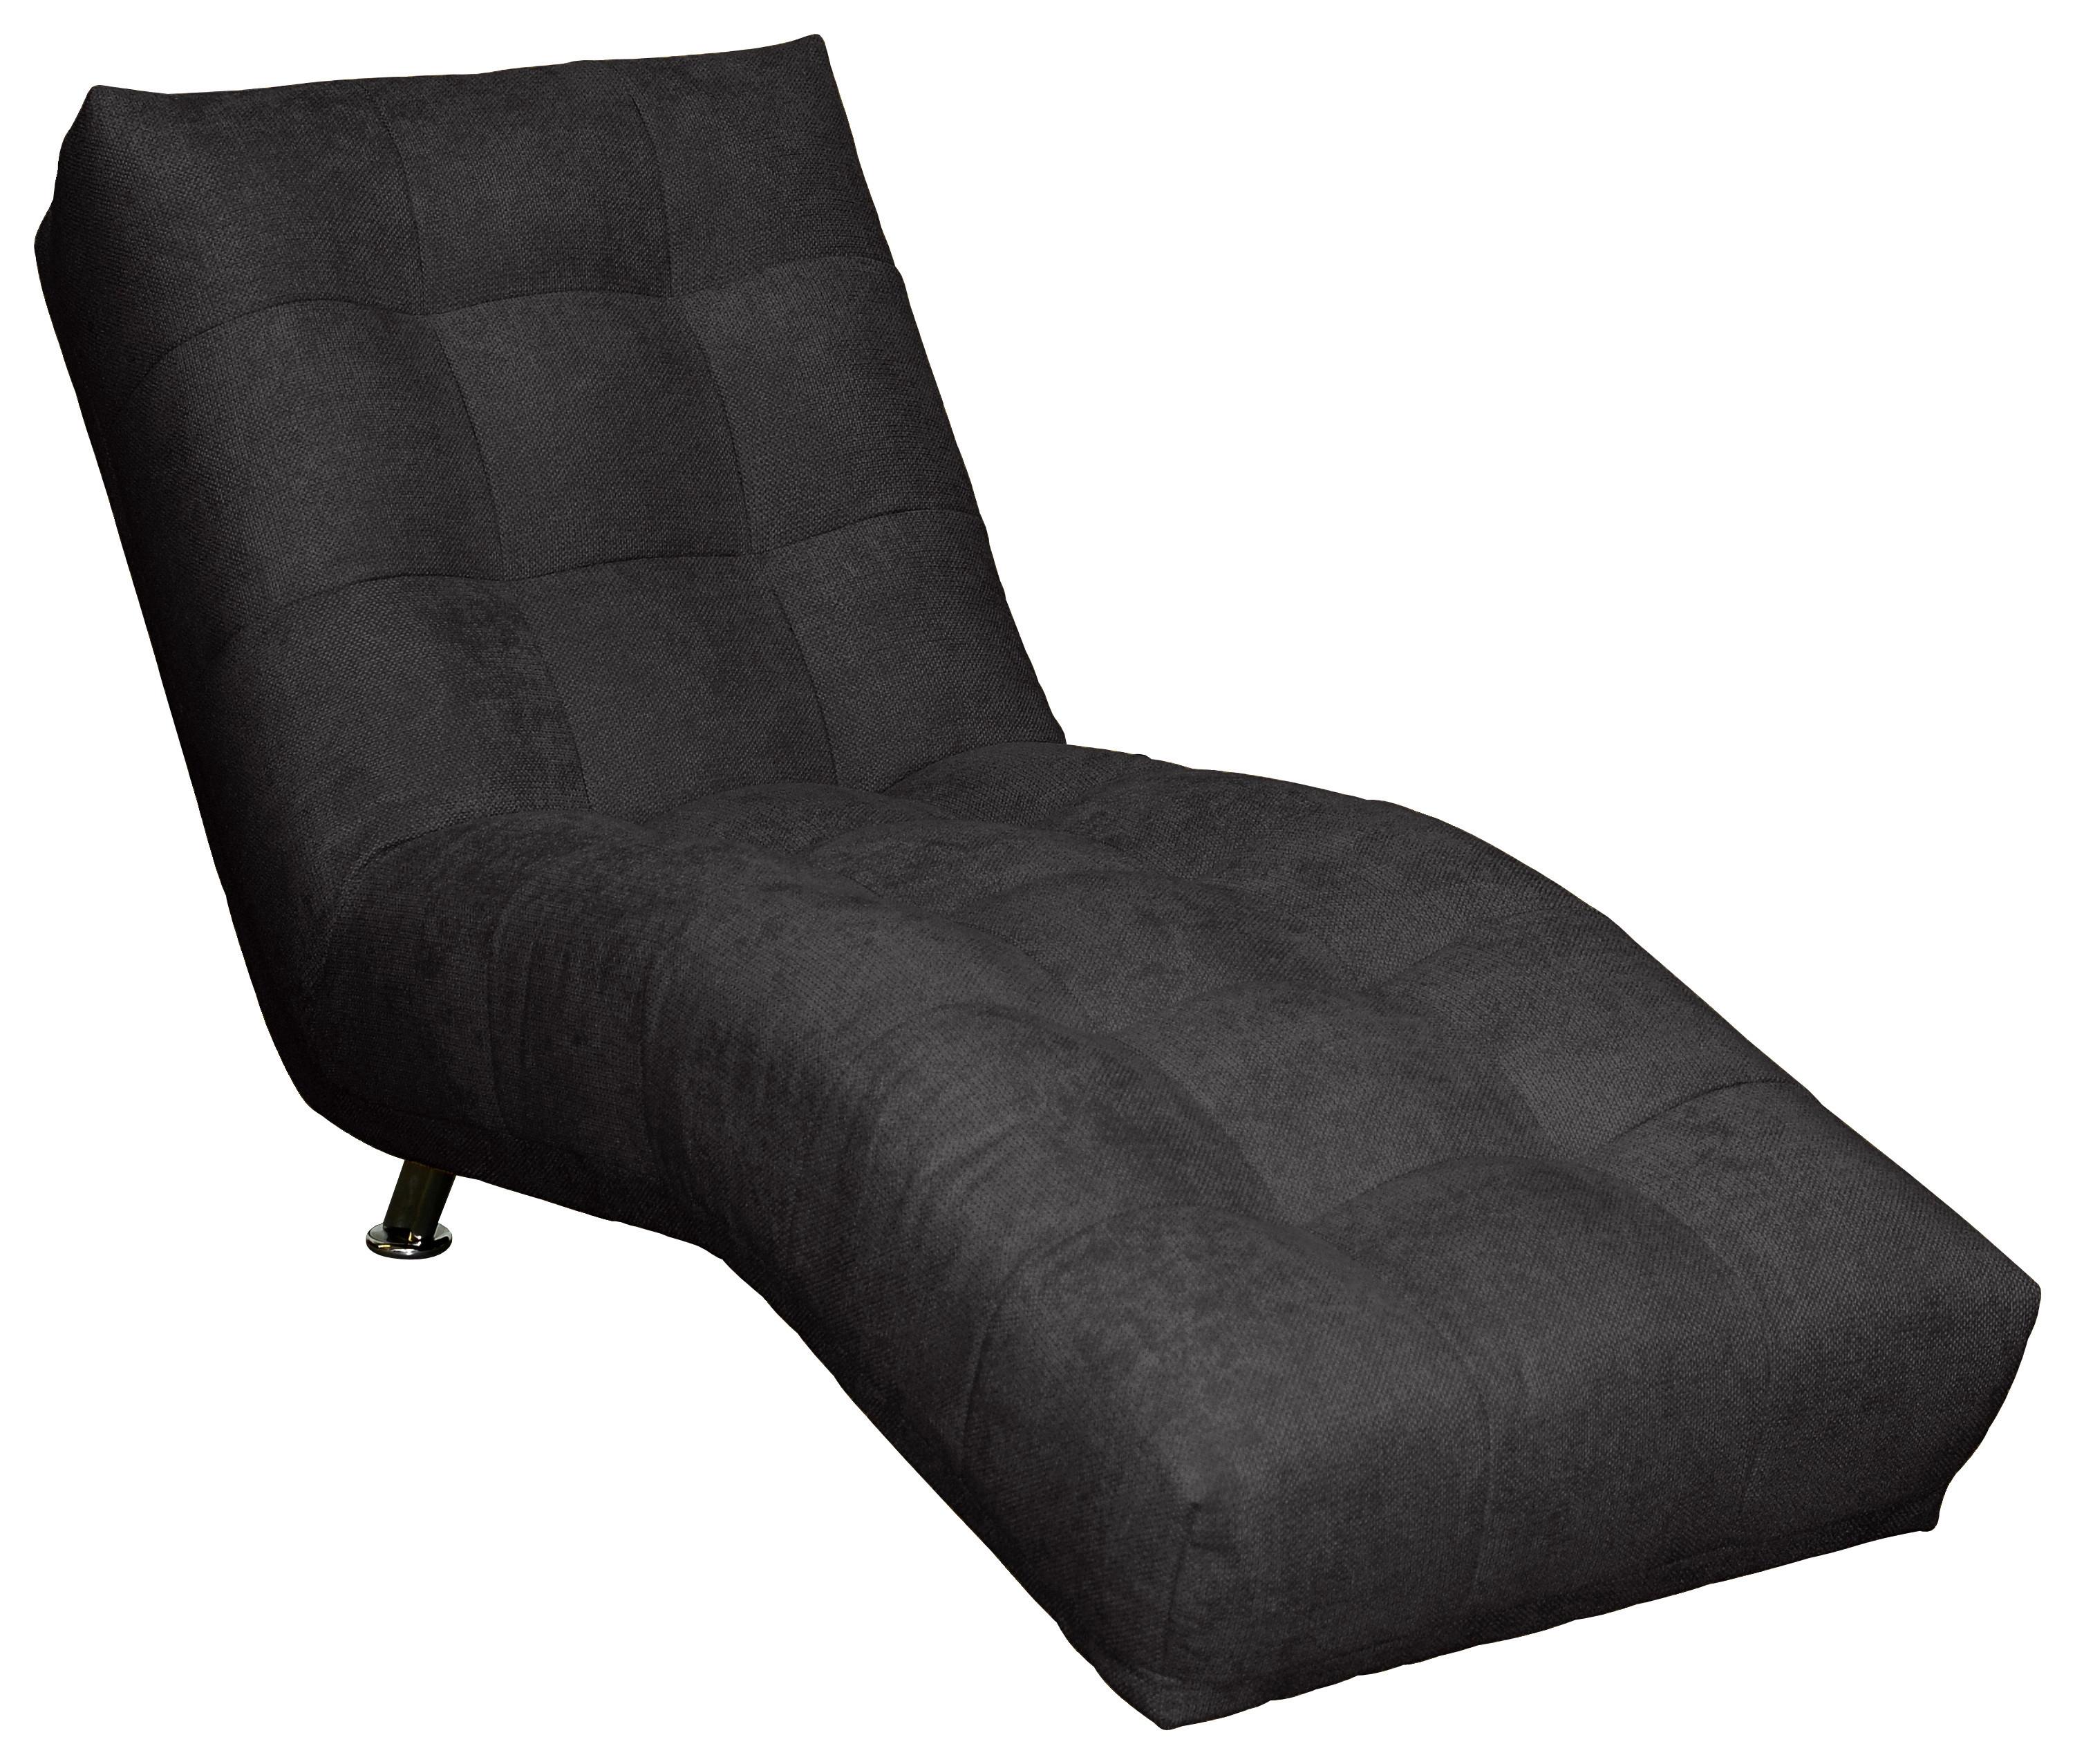 Relaxační Lehátko Isabella, Černé - černá/barvy chromu, Moderní, textil (68/88/164cm)